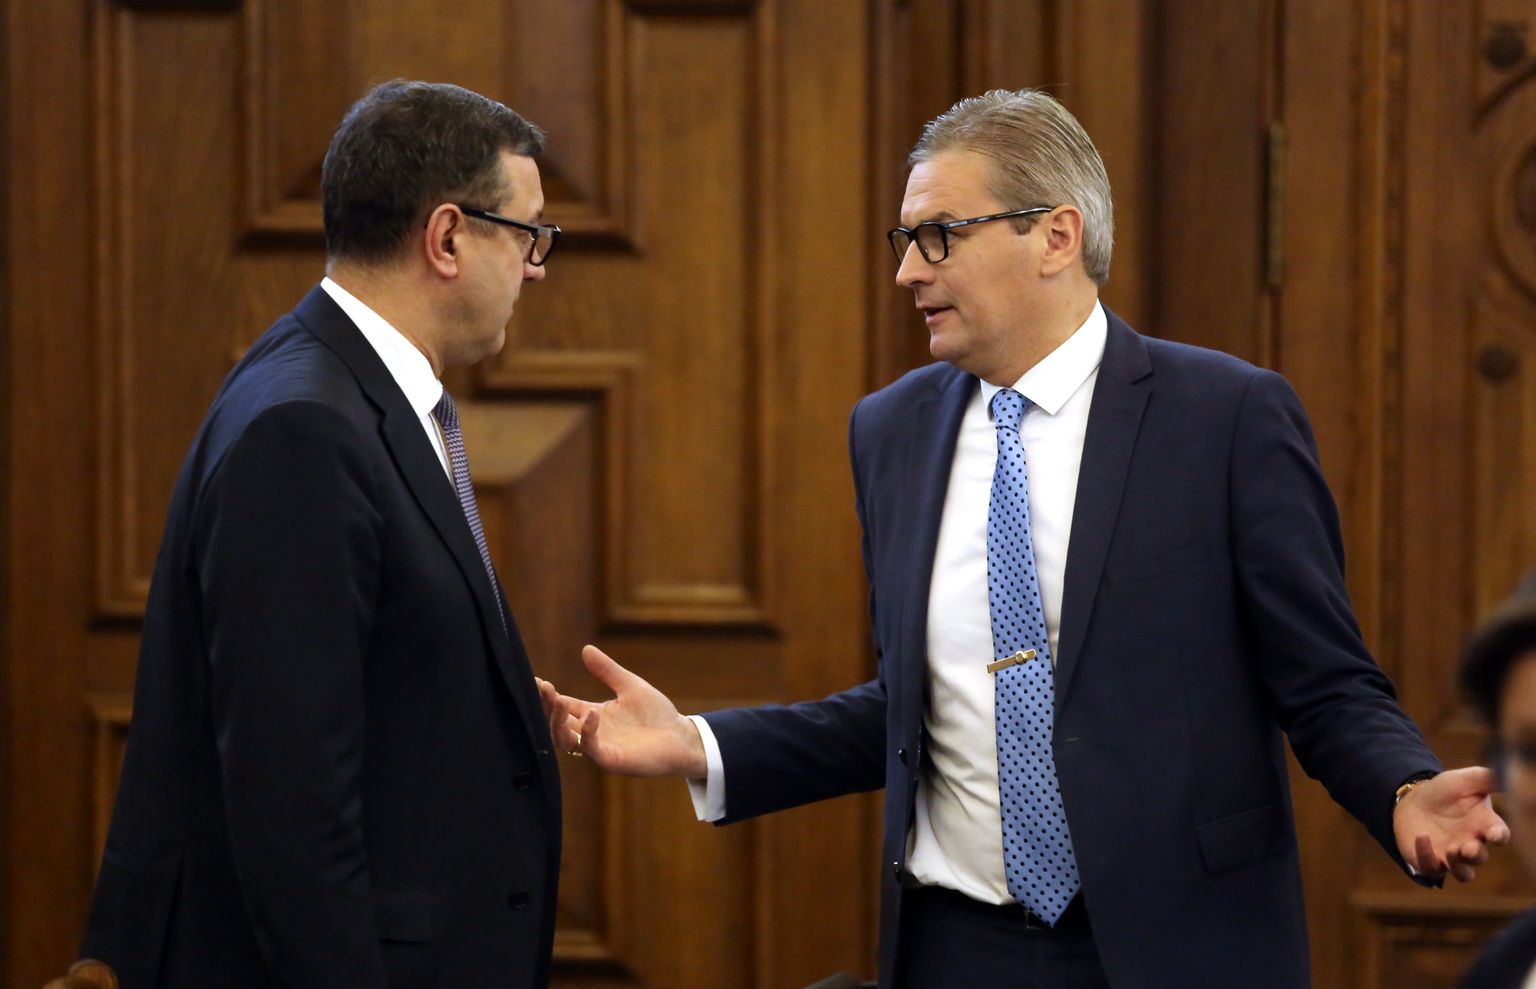 Finanšu ministrs Jānis Reirs (no kreisās) un Saeimas deputāts Mārtiņš Bondars pirms Saeimas ārkārtas sēdes, kurā izskatīs otrajā lasījumā gadskārtējo valsts budžetu un ar to saistīto likumprojektu.